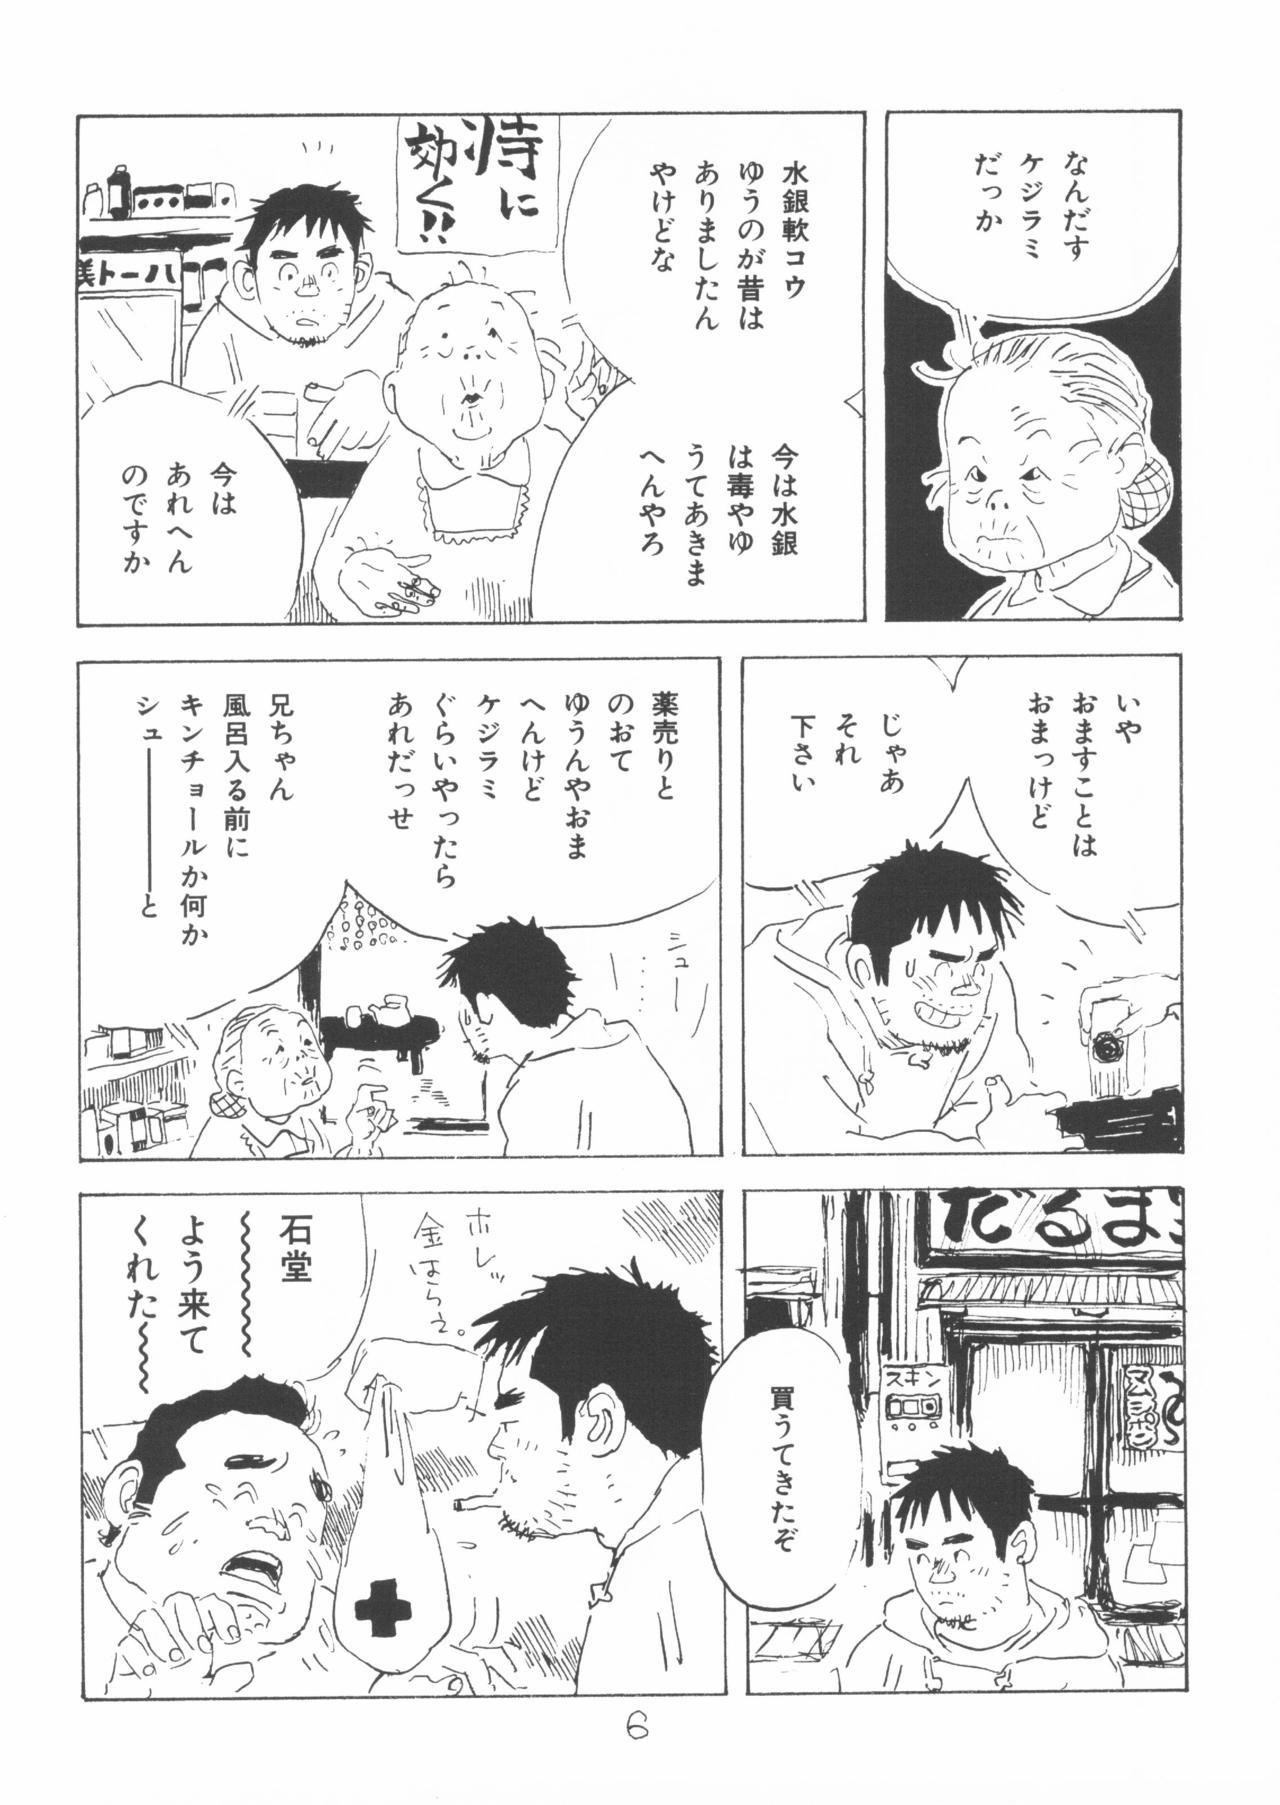 Gordinha aa, dansei jishin - Original No Condom - Page 6